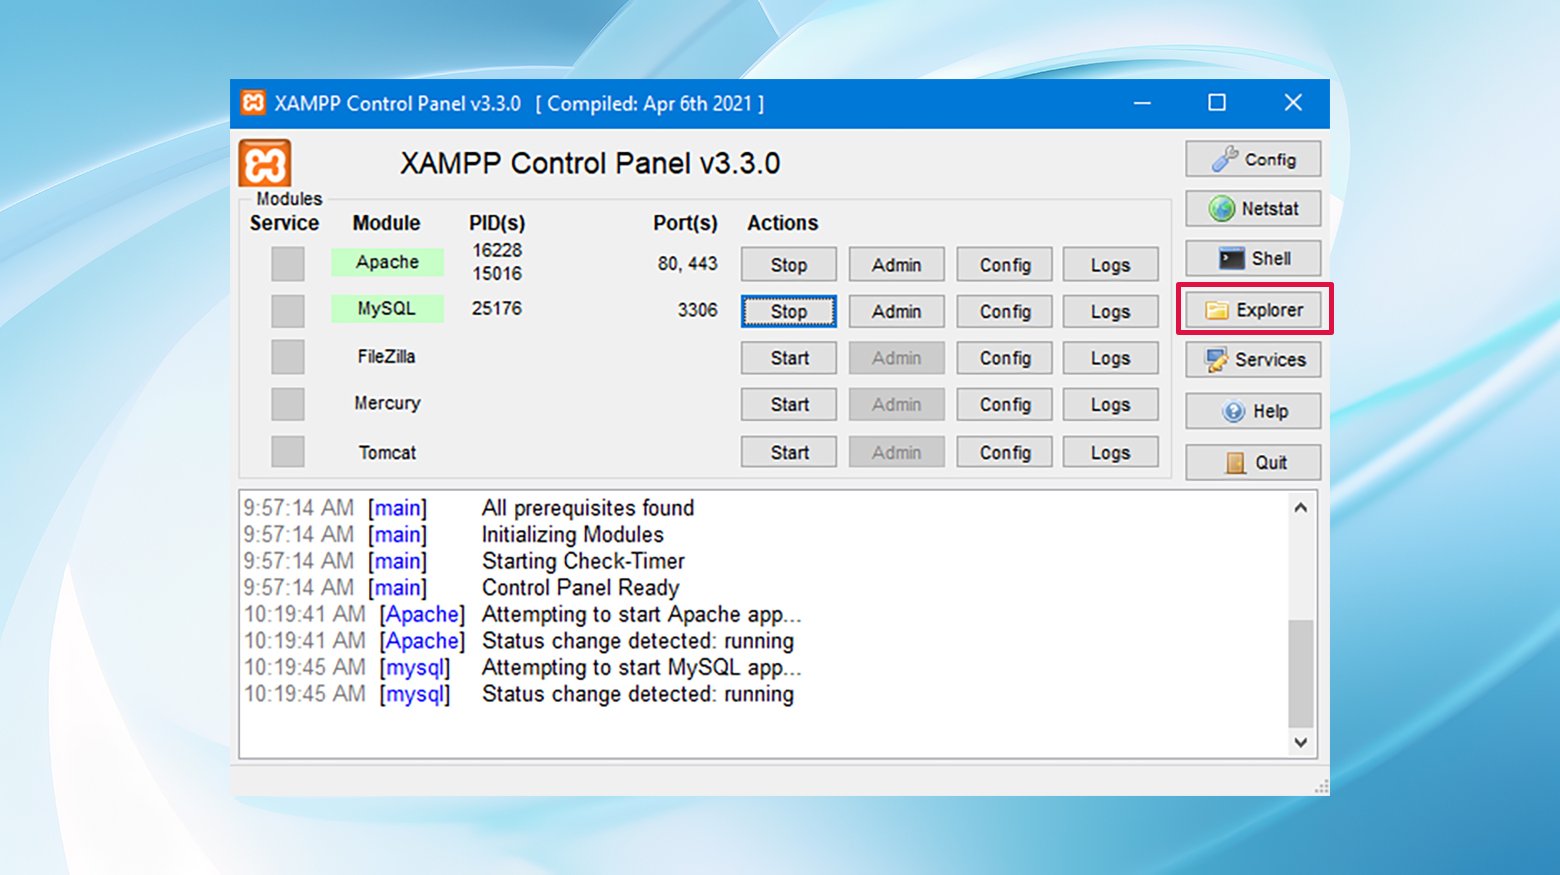 Acceder a los archivos de XAMPP desde el botón del explorador del panel de control es el primer paso para solucionar los errores de localhost/index.php.